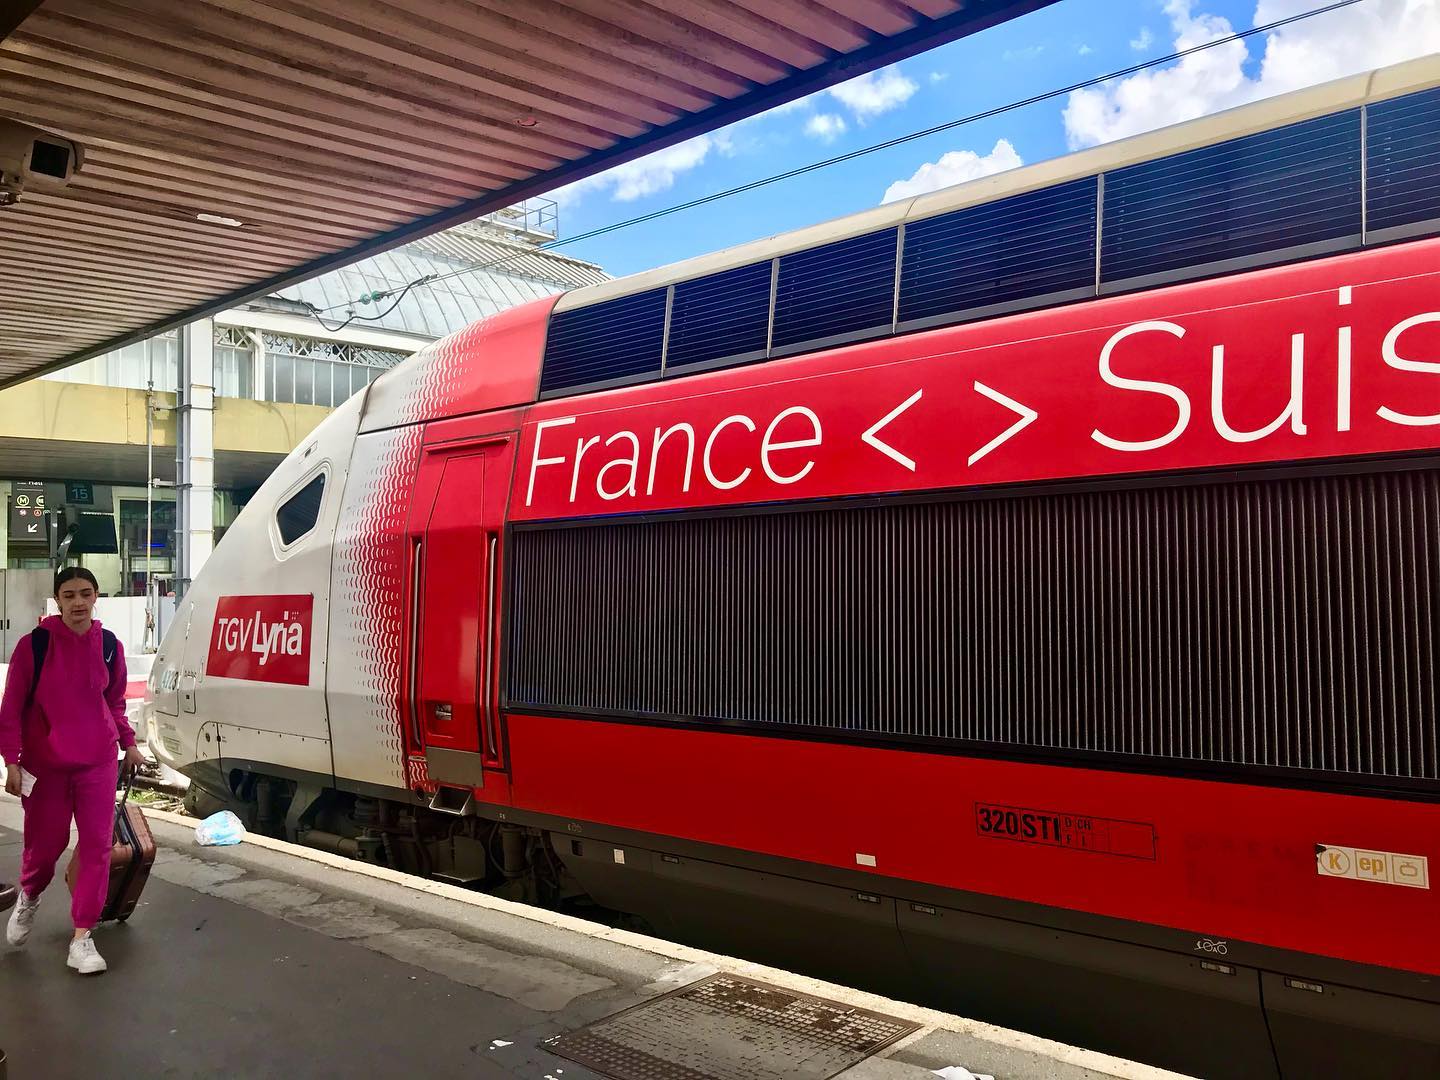 Voyage en Suisse TGV Lyria